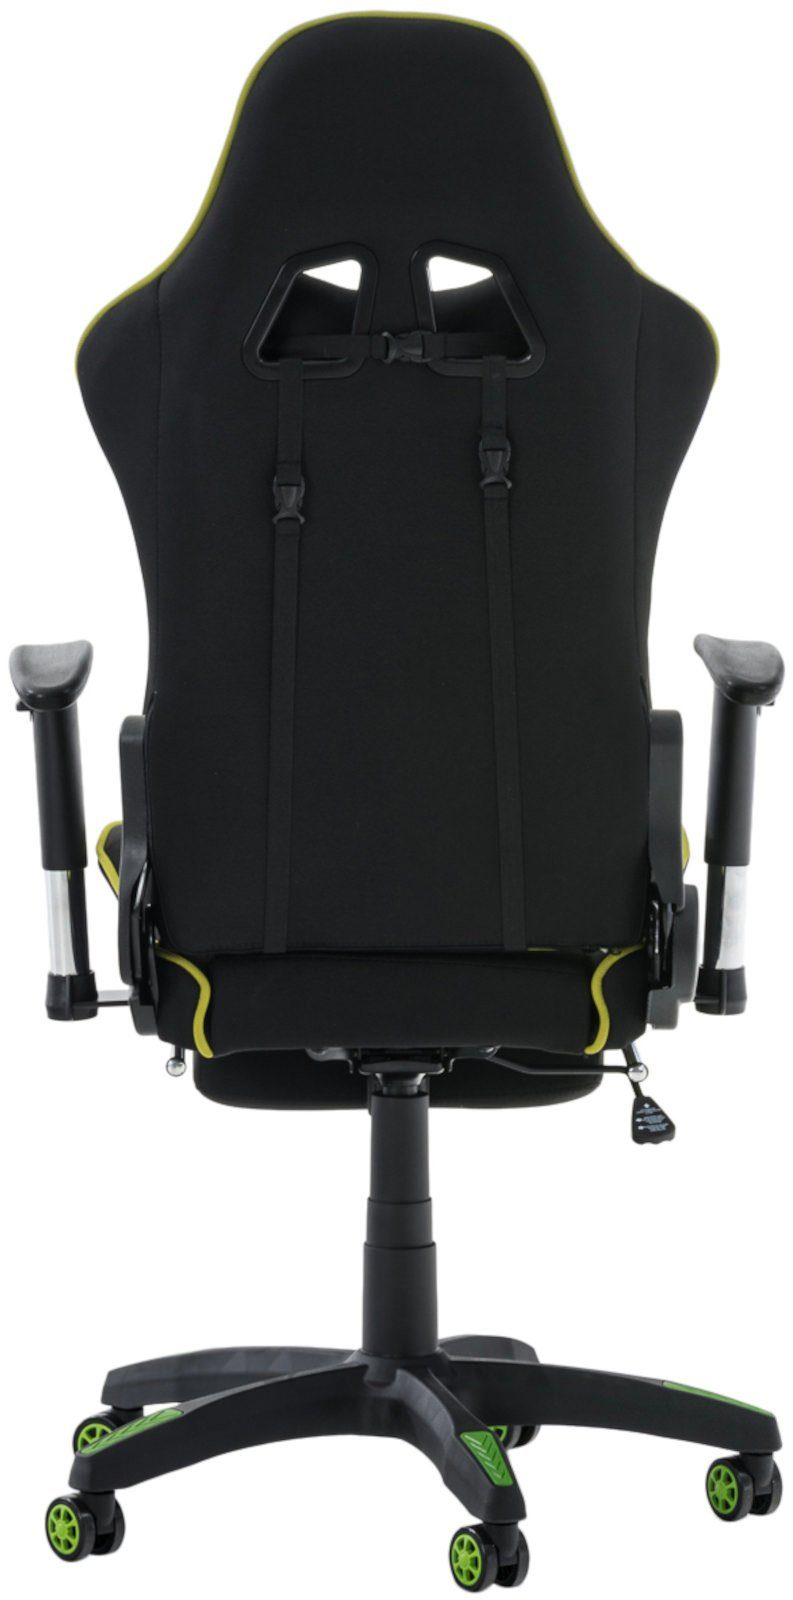 Höhenverstellbar und Fußablage, Turbo mit CLP drehbar Gaming Chair